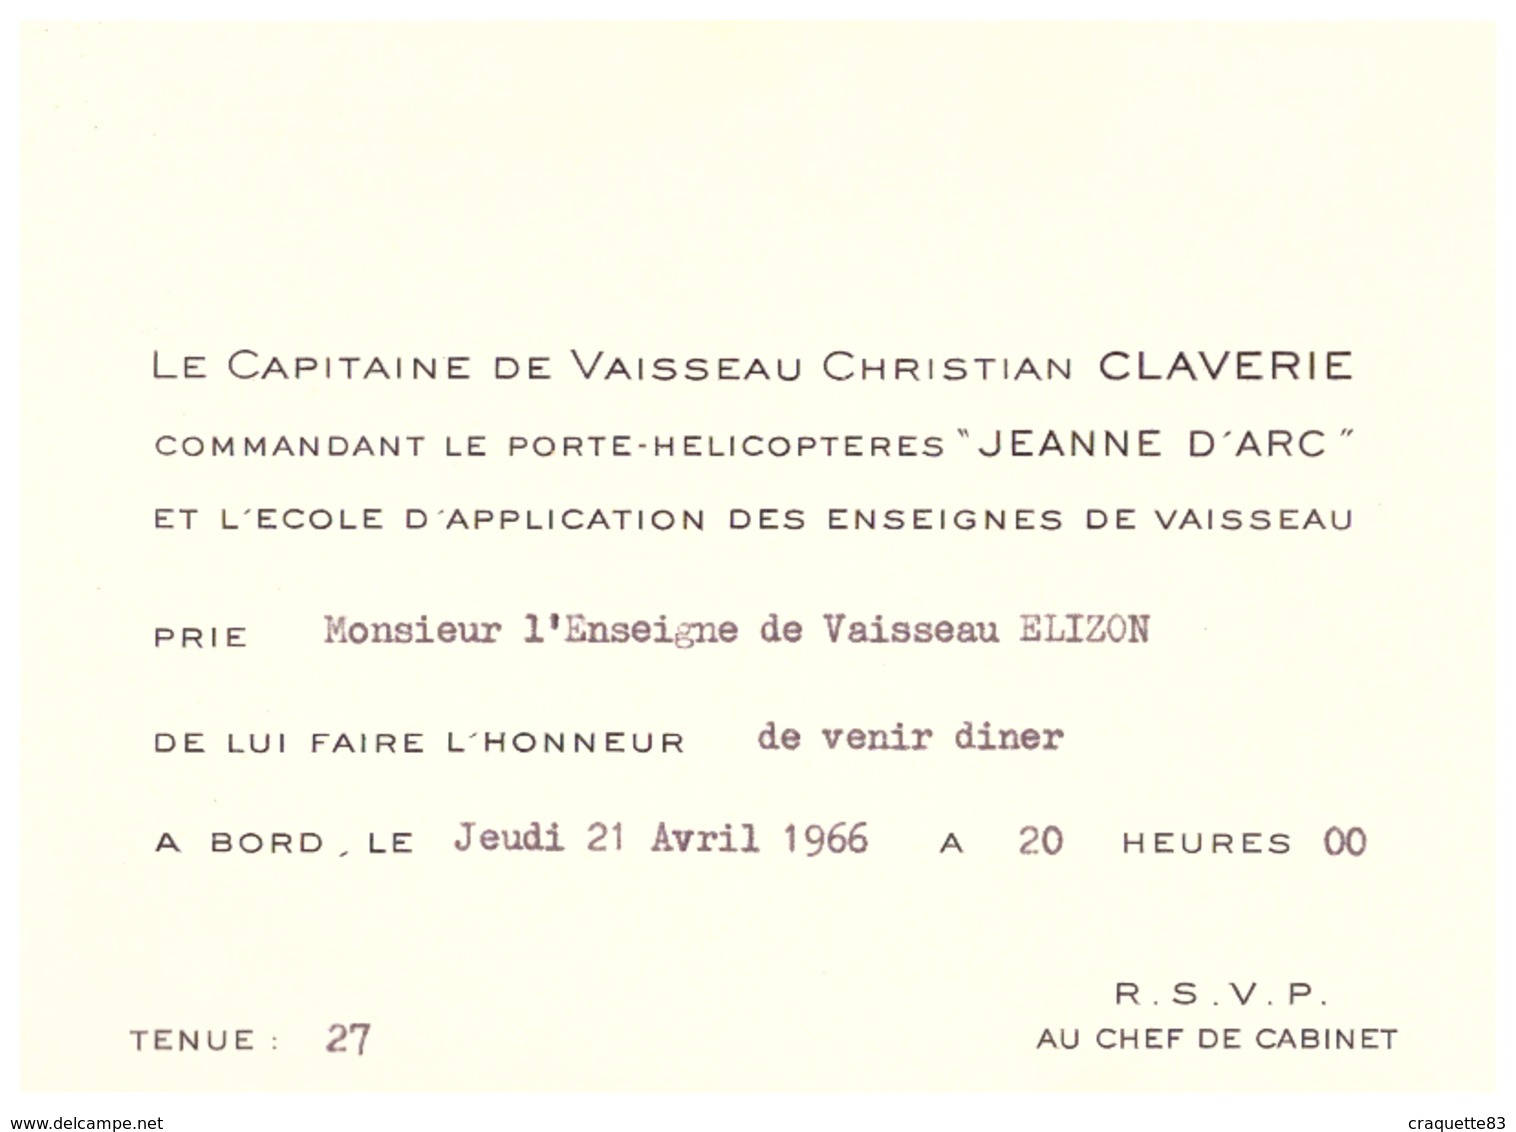 LE CAPITAINE DE VAISSEAU CHRISTIAN CLAVERIE COMMADANT LE PORTE-HELICOPTERE "JEANNE D'ARC" ...VENIR DINER A BORD 21.04.66 - Documents